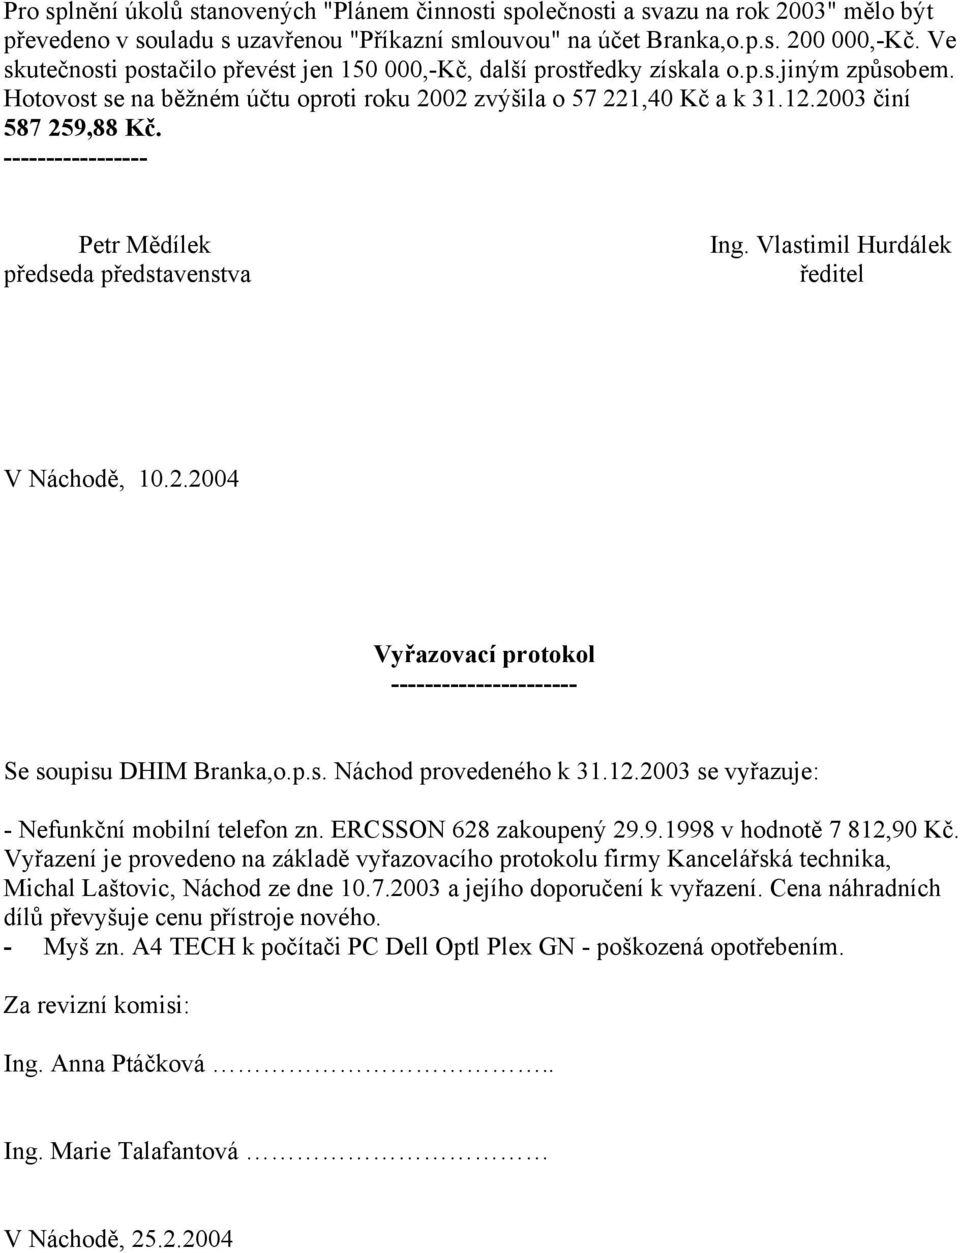 ----------------- Petr Mědílek předseda představenstva Ing. Vlastimil Hurdálek ředitel V Náchodě, 10.2.2004 Vyřazovací protokol ---------------------- Se soupisu DHIM Branka,o.p.s. Náchod provedeného k 31.